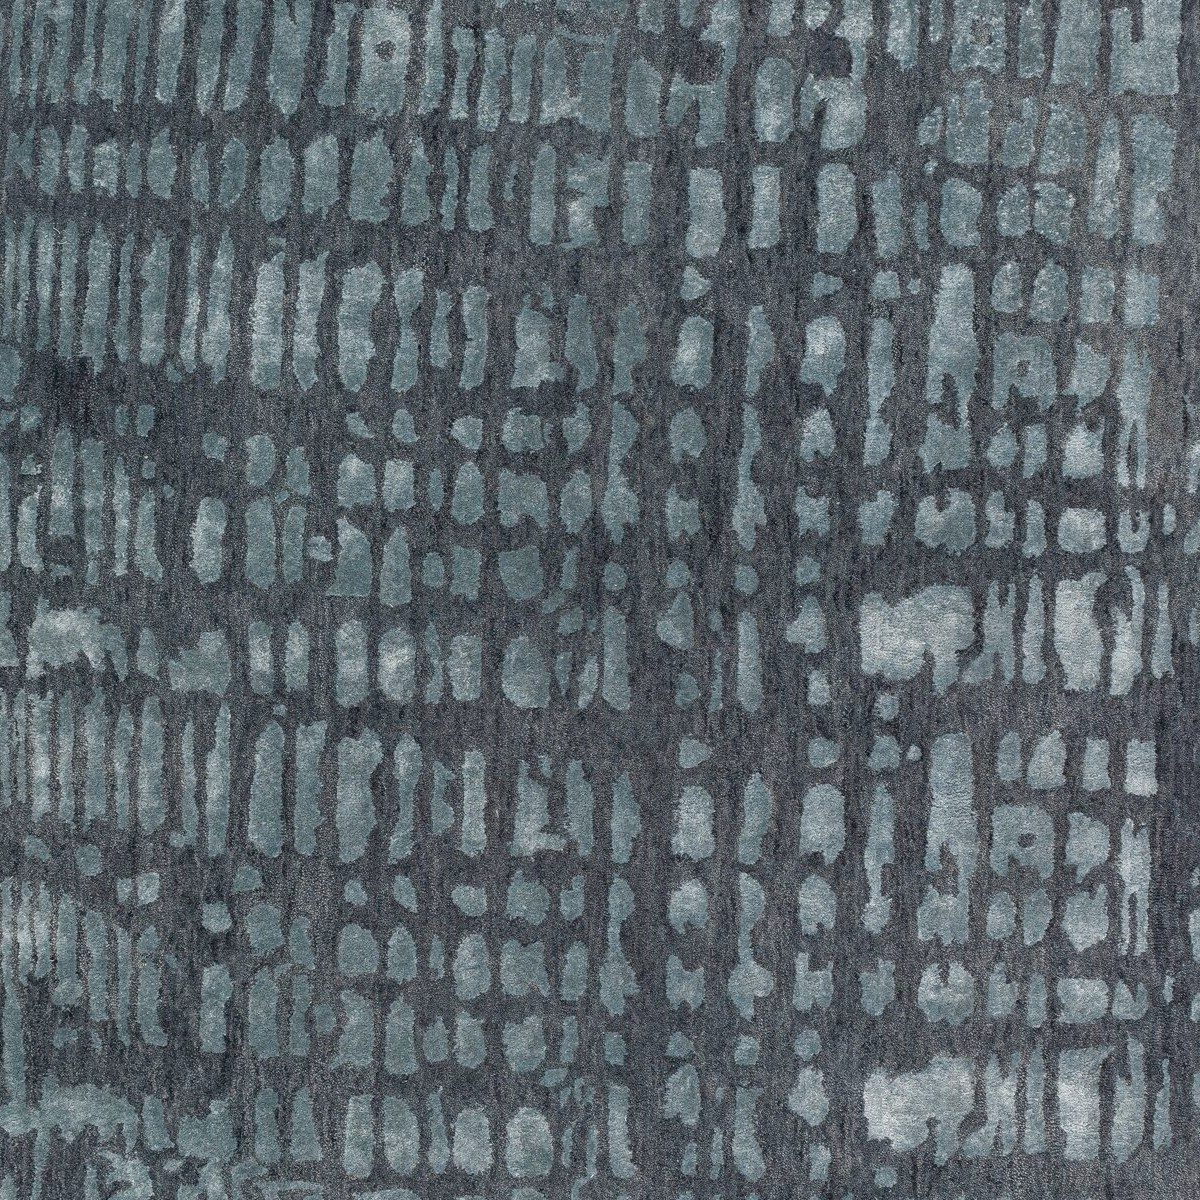 JOOP! Croco Teppich mit Muster in Grau in Detailansicht.